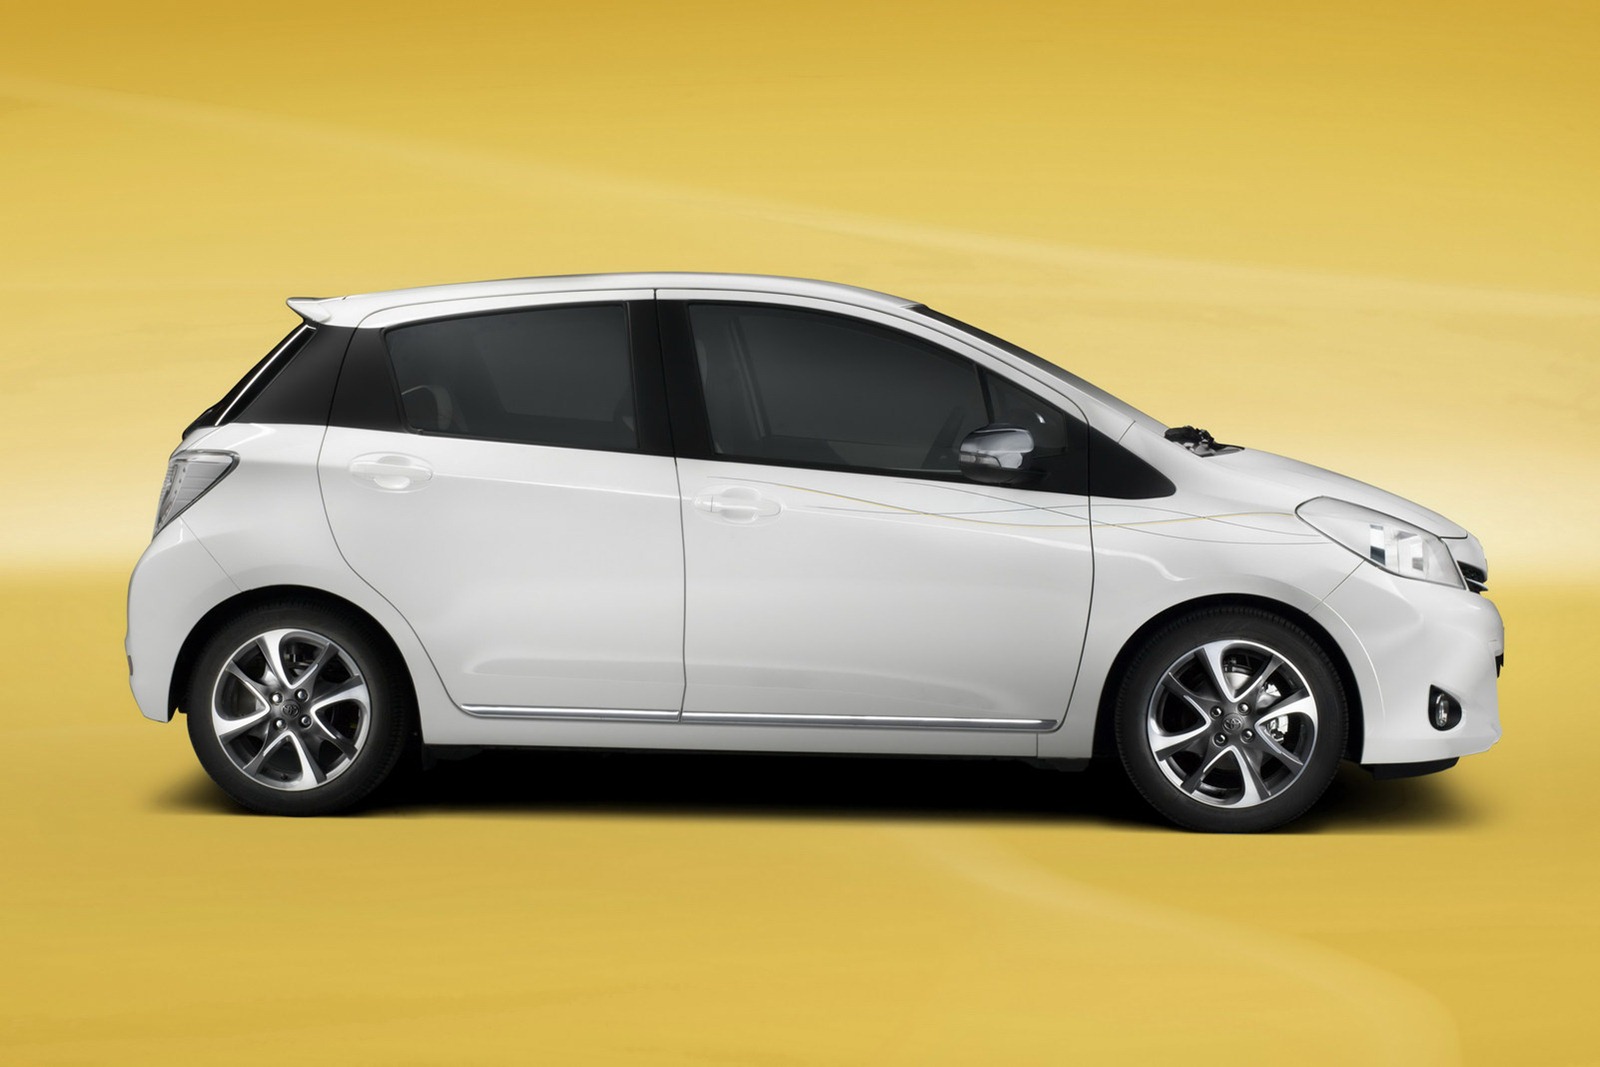 Toyota Verso 2014 tiết kiệm nhiên liệu đáng kể 2